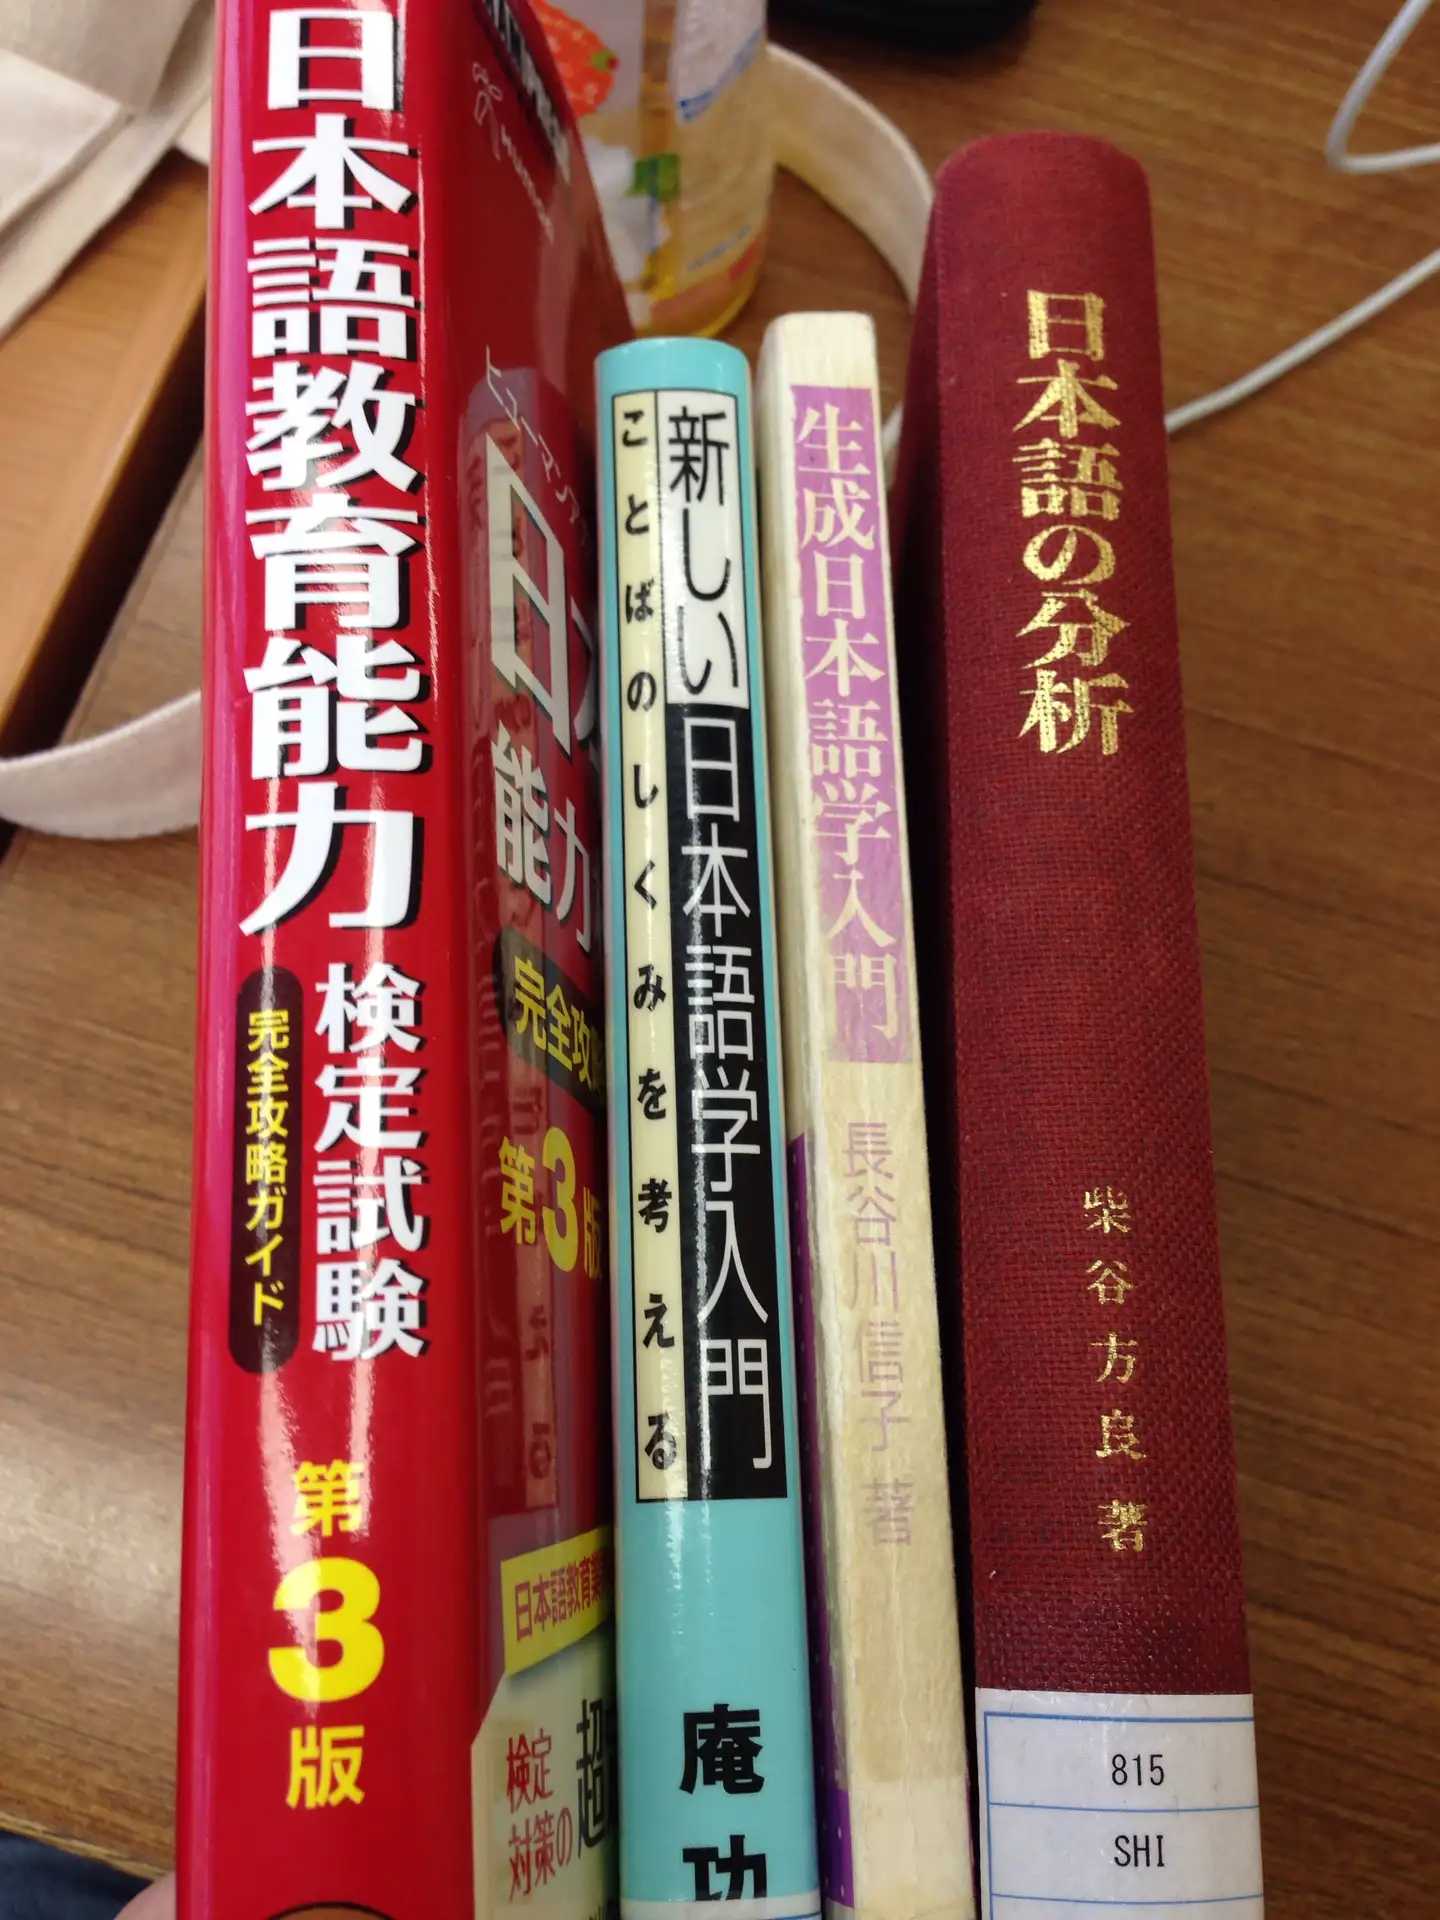 有哪些值得推荐的日语语言学入门书籍？ - 西口东的回答- 知乎